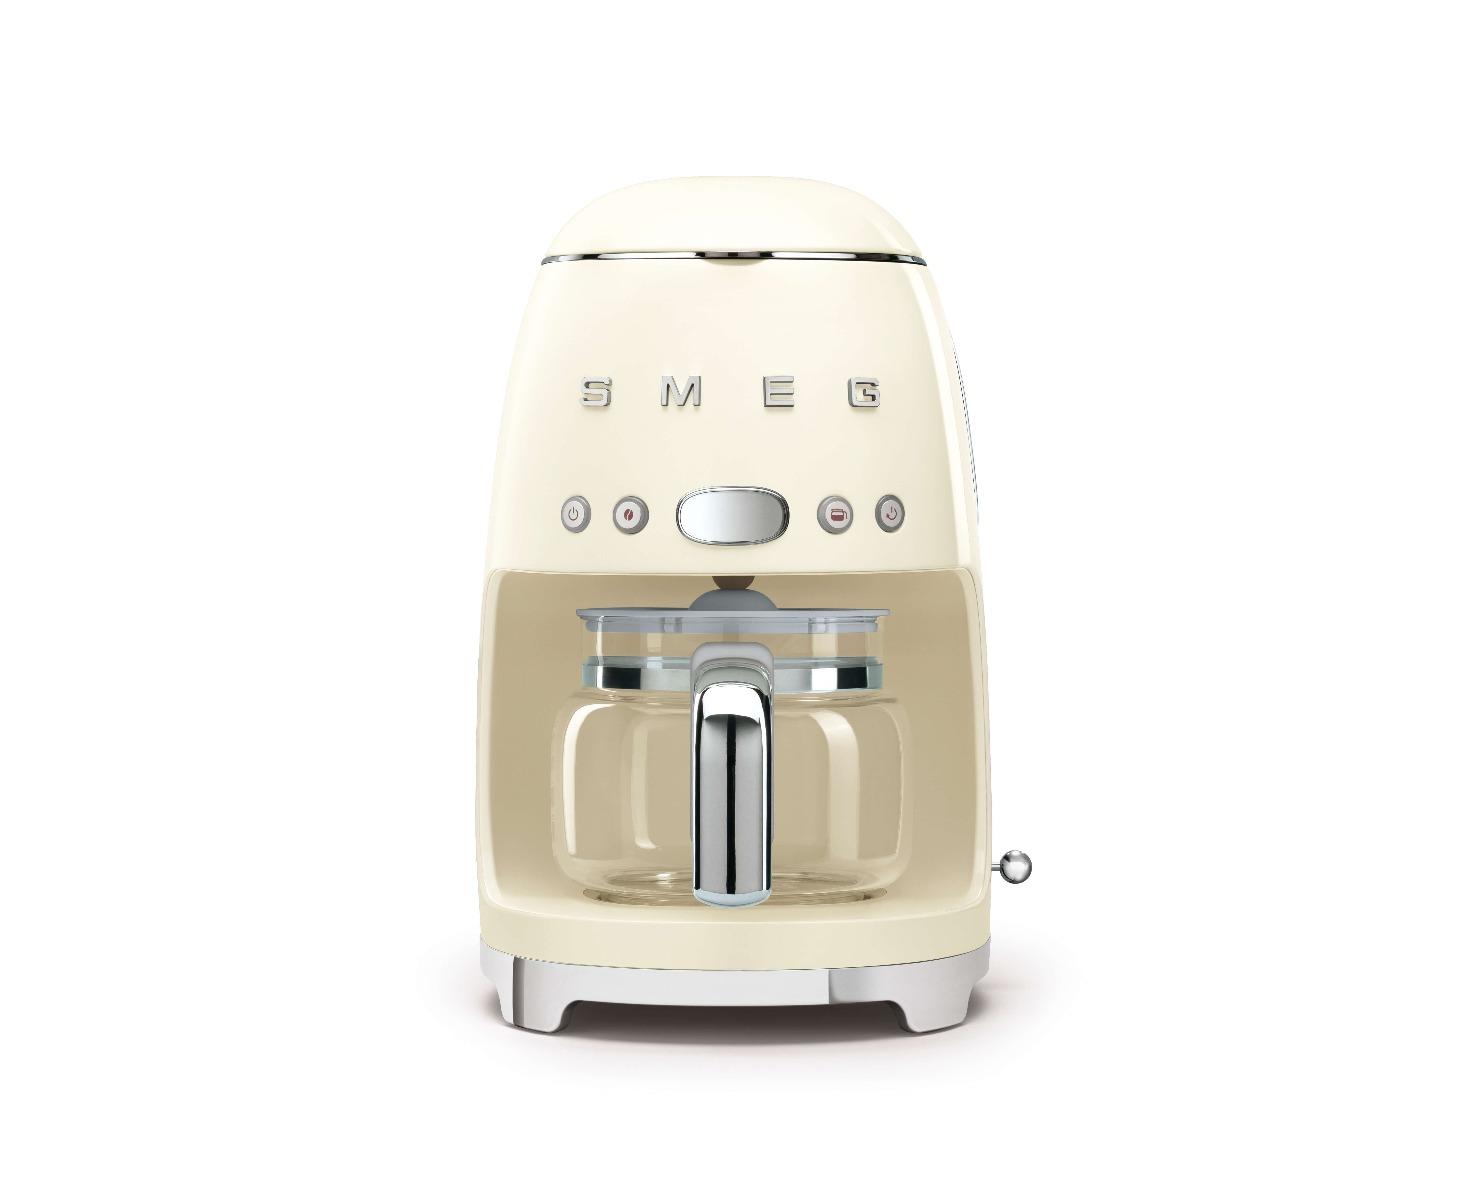 ماكينة صنع القهوة المقطرة 1.4 لتر 1050 واط سميج بيج Smeg Drip Filter Coffee Machine